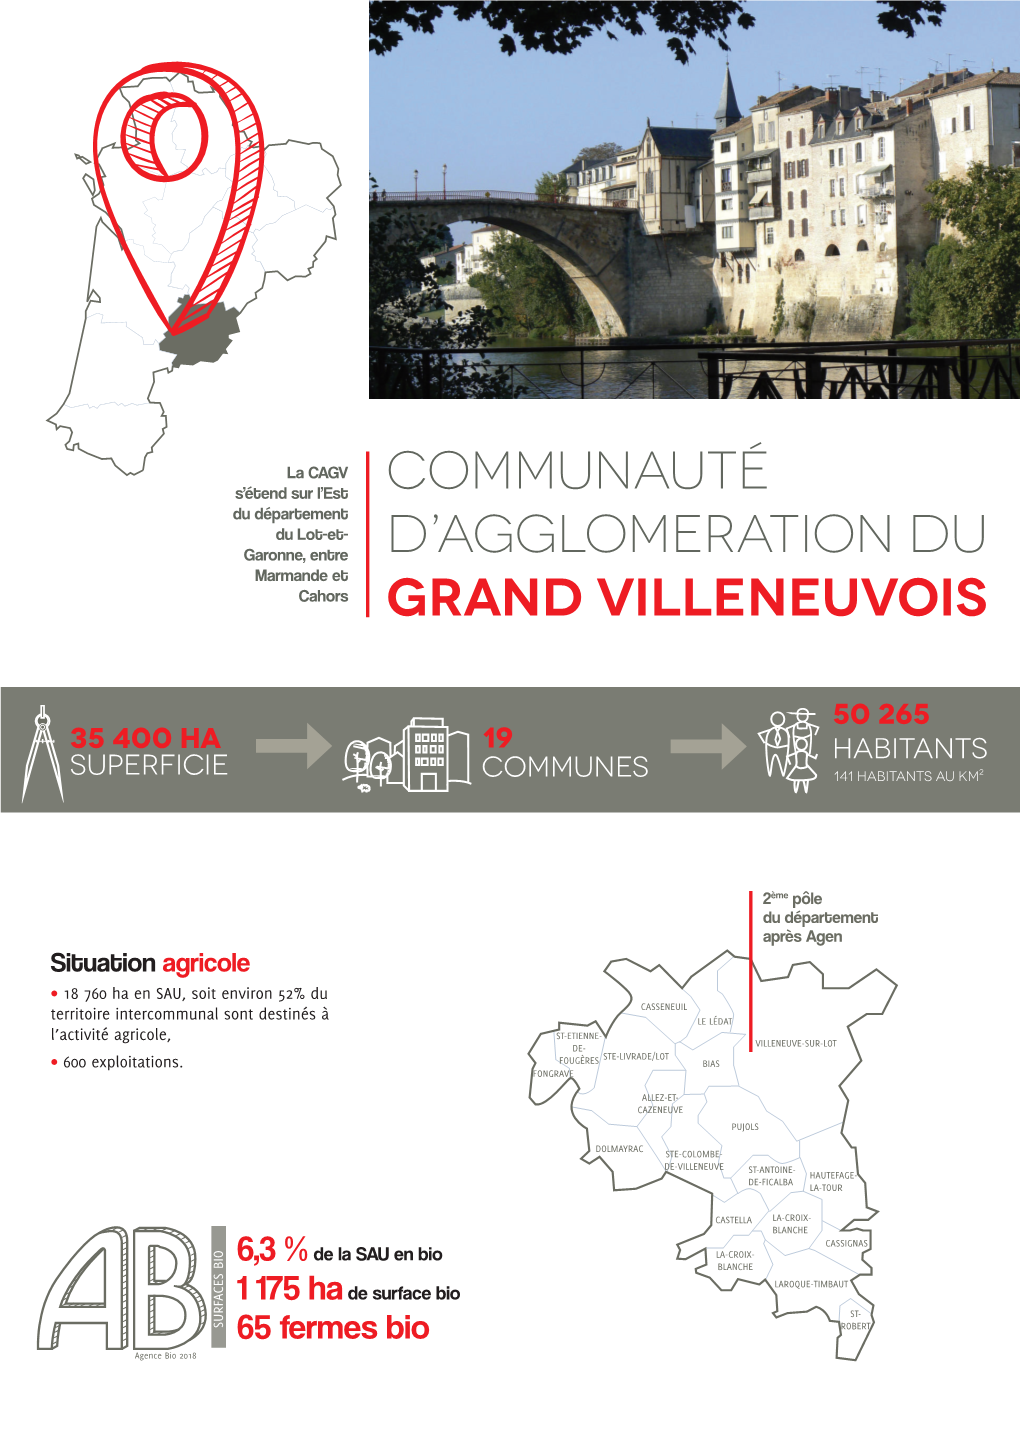 Communauté D'agglomeration Du Grand Villeneuvois